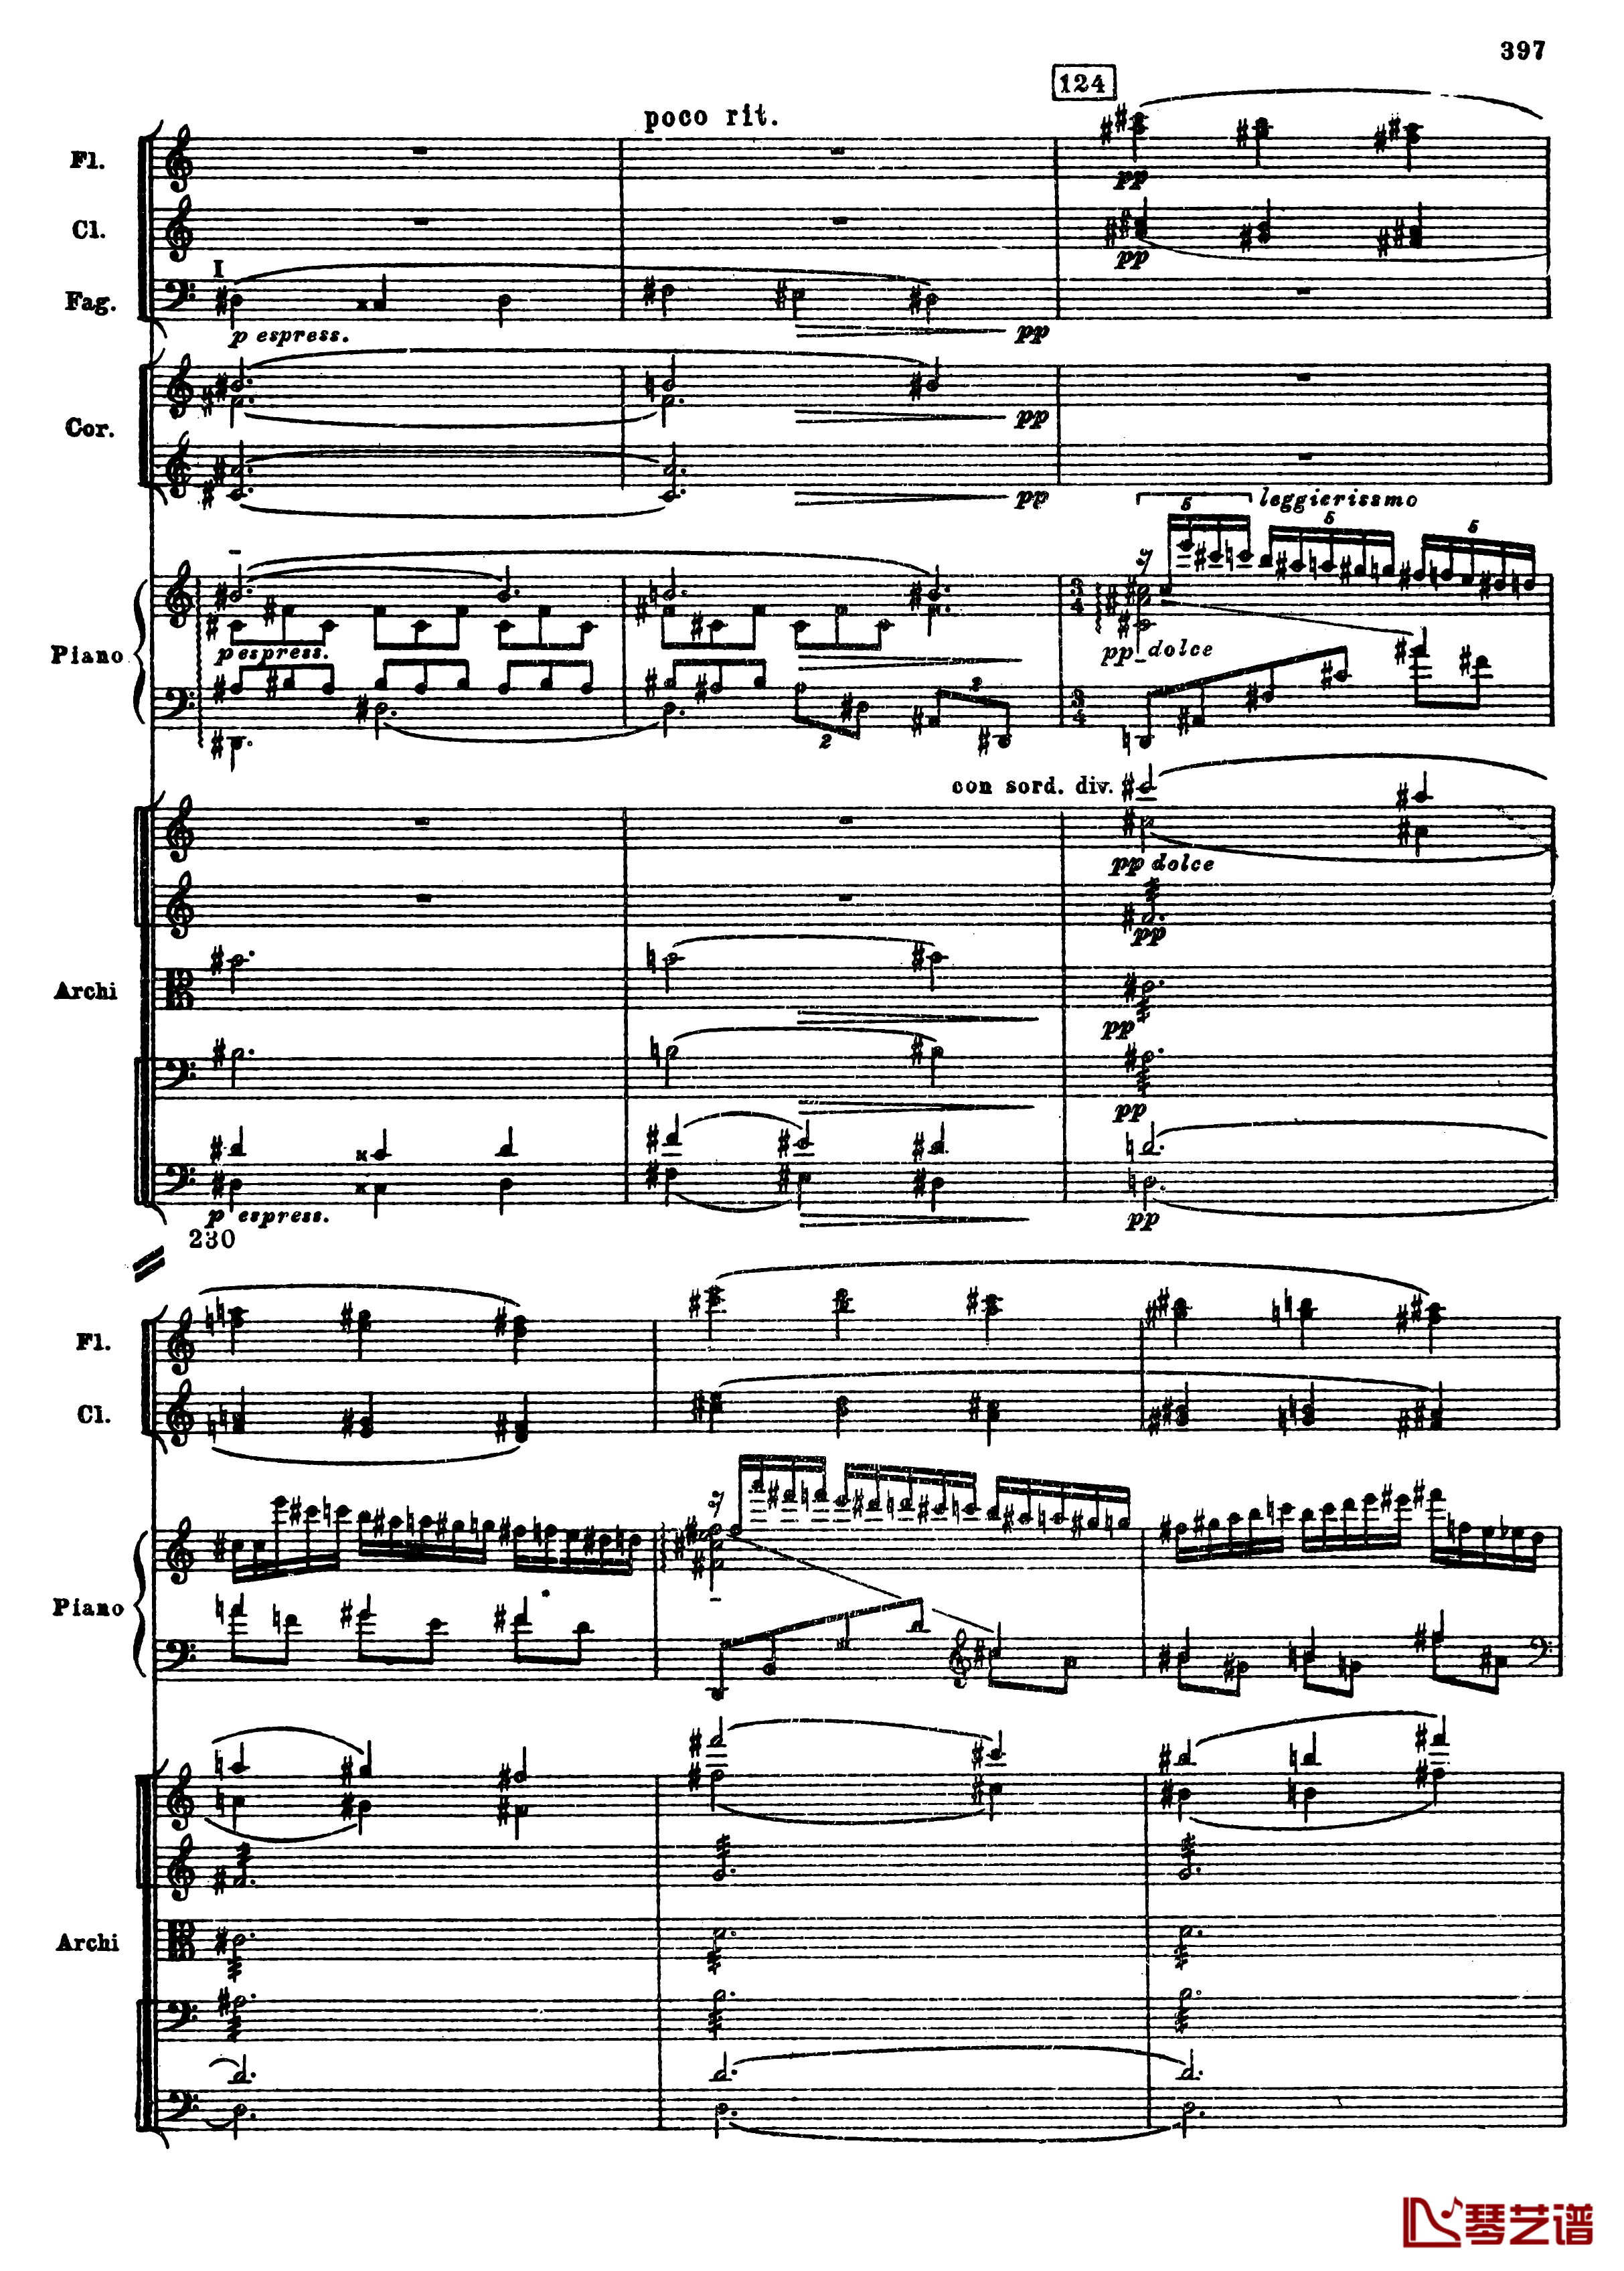 普罗科菲耶夫第三钢琴协奏曲钢琴谱-总谱-普罗科非耶夫129